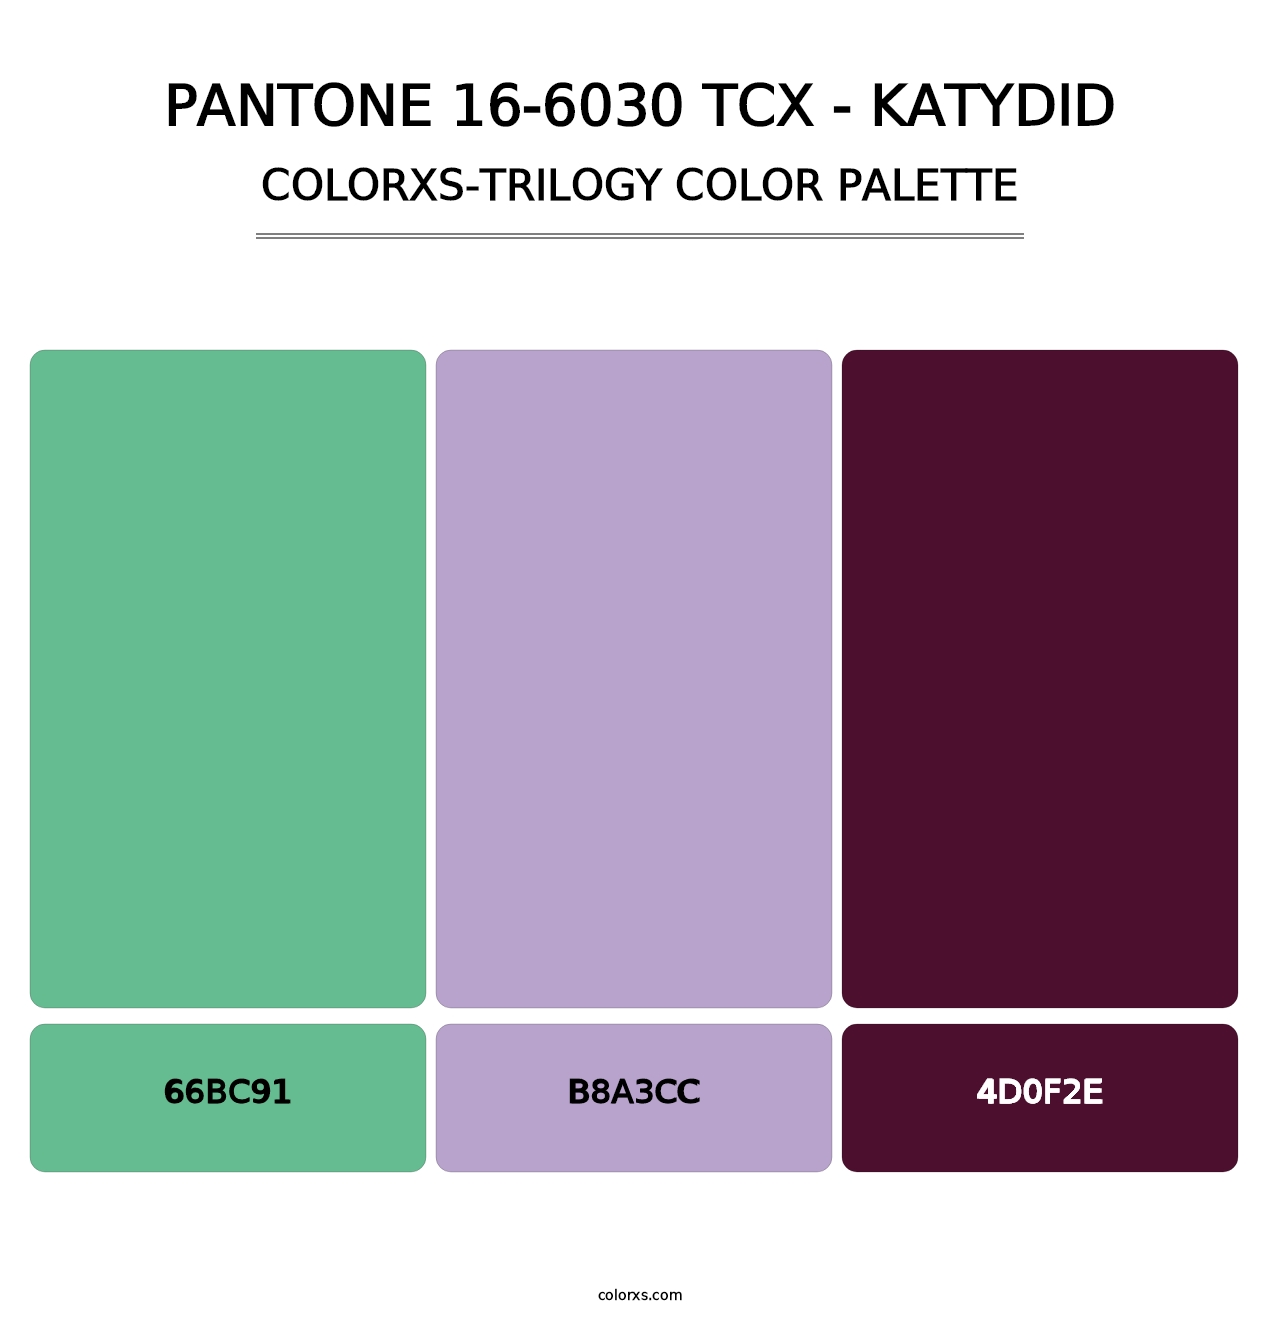 PANTONE 16-6030 TCX - Katydid - Colorxs Trilogy Palette